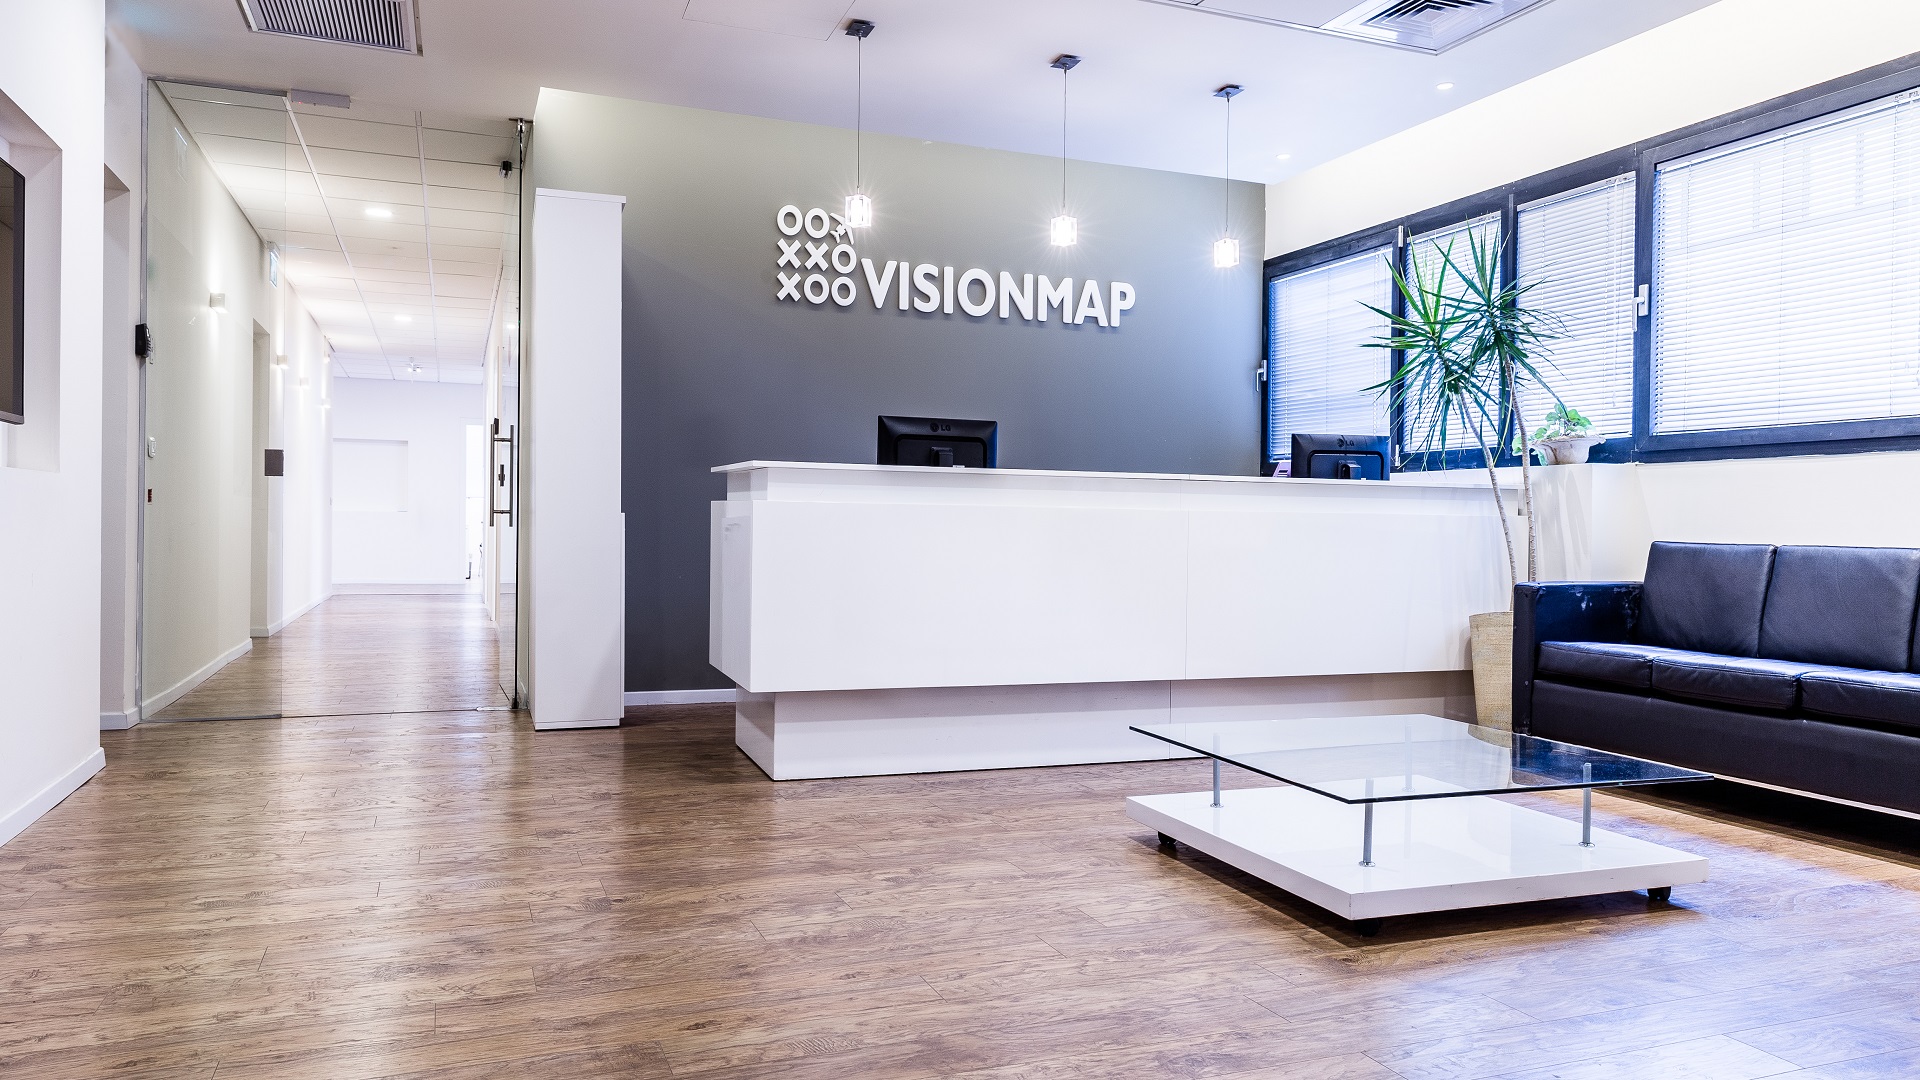 תכנון אדריכלי משרדי של חברת Visionmap